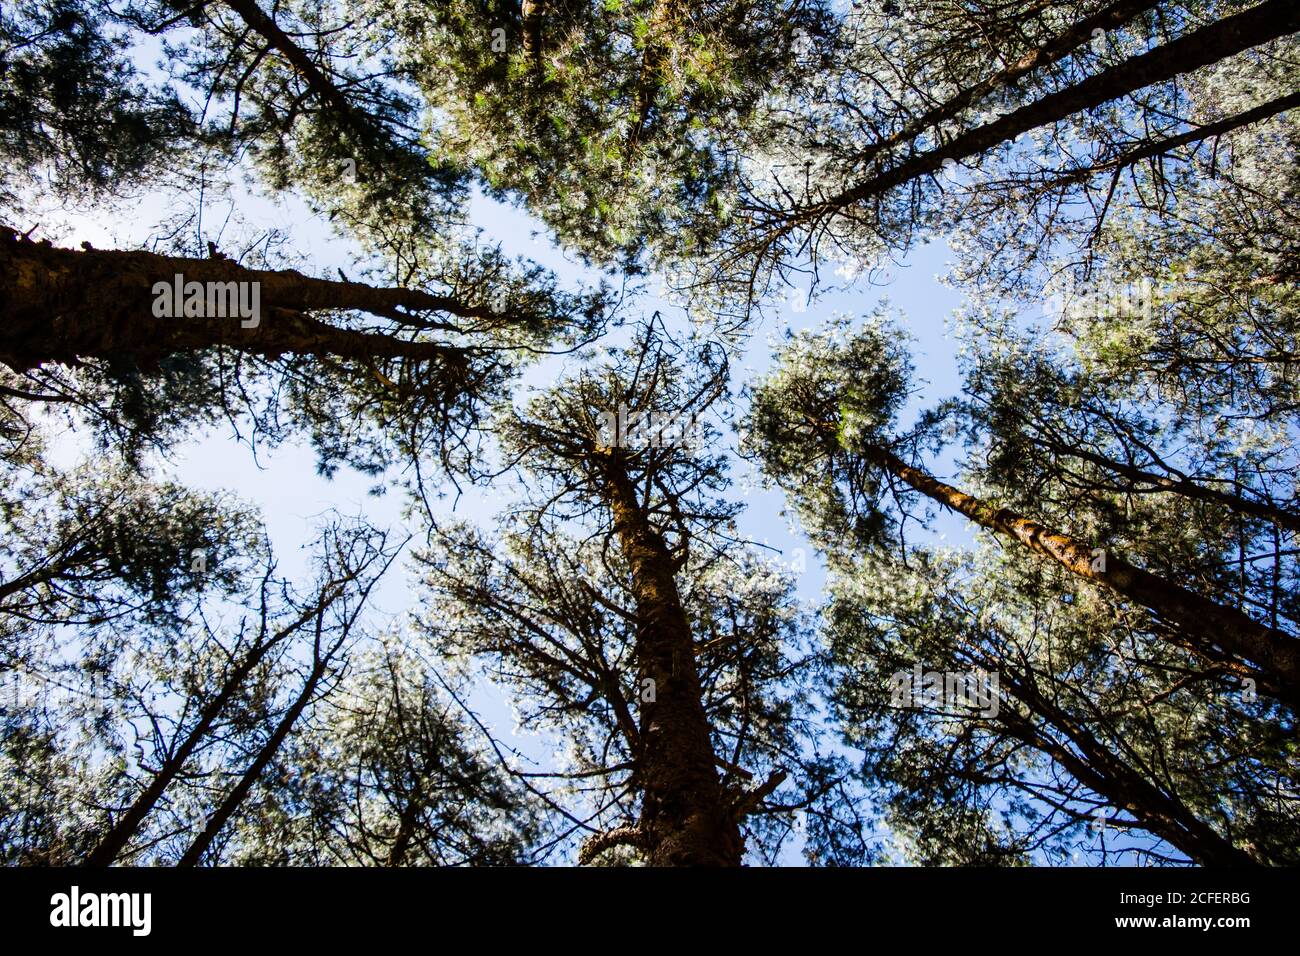 Kiefernwald in der Nähe von Ooty pykara tamilnadu Indien. Kiefernwälder rühmt sich einer guten Sammlung von ordentlich gepflanzten Kiefern Stockfoto